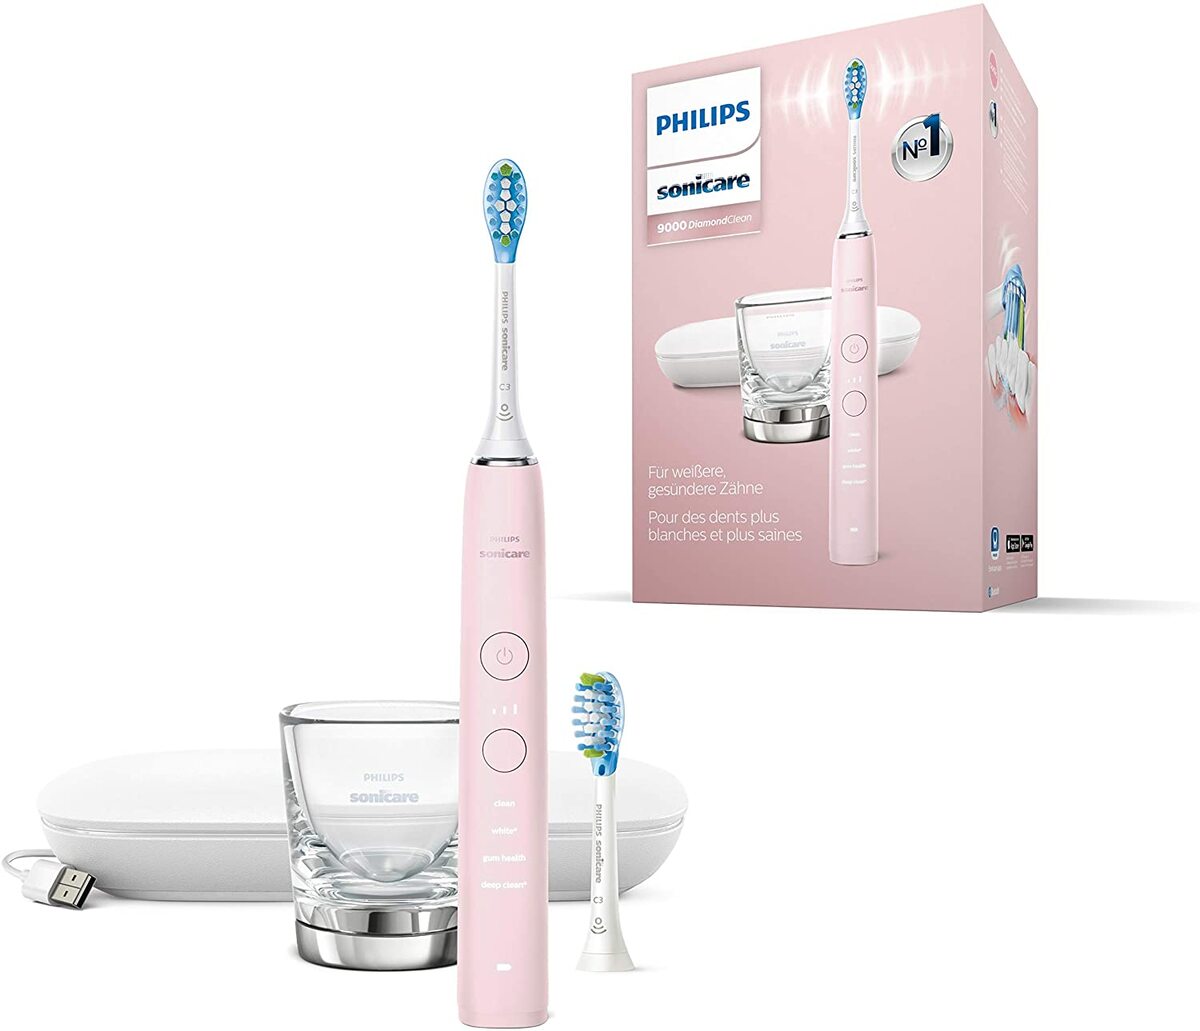 Brosses à dents connectées à partir de 70 euros (Oral-B Smart, Philips Sonicare)